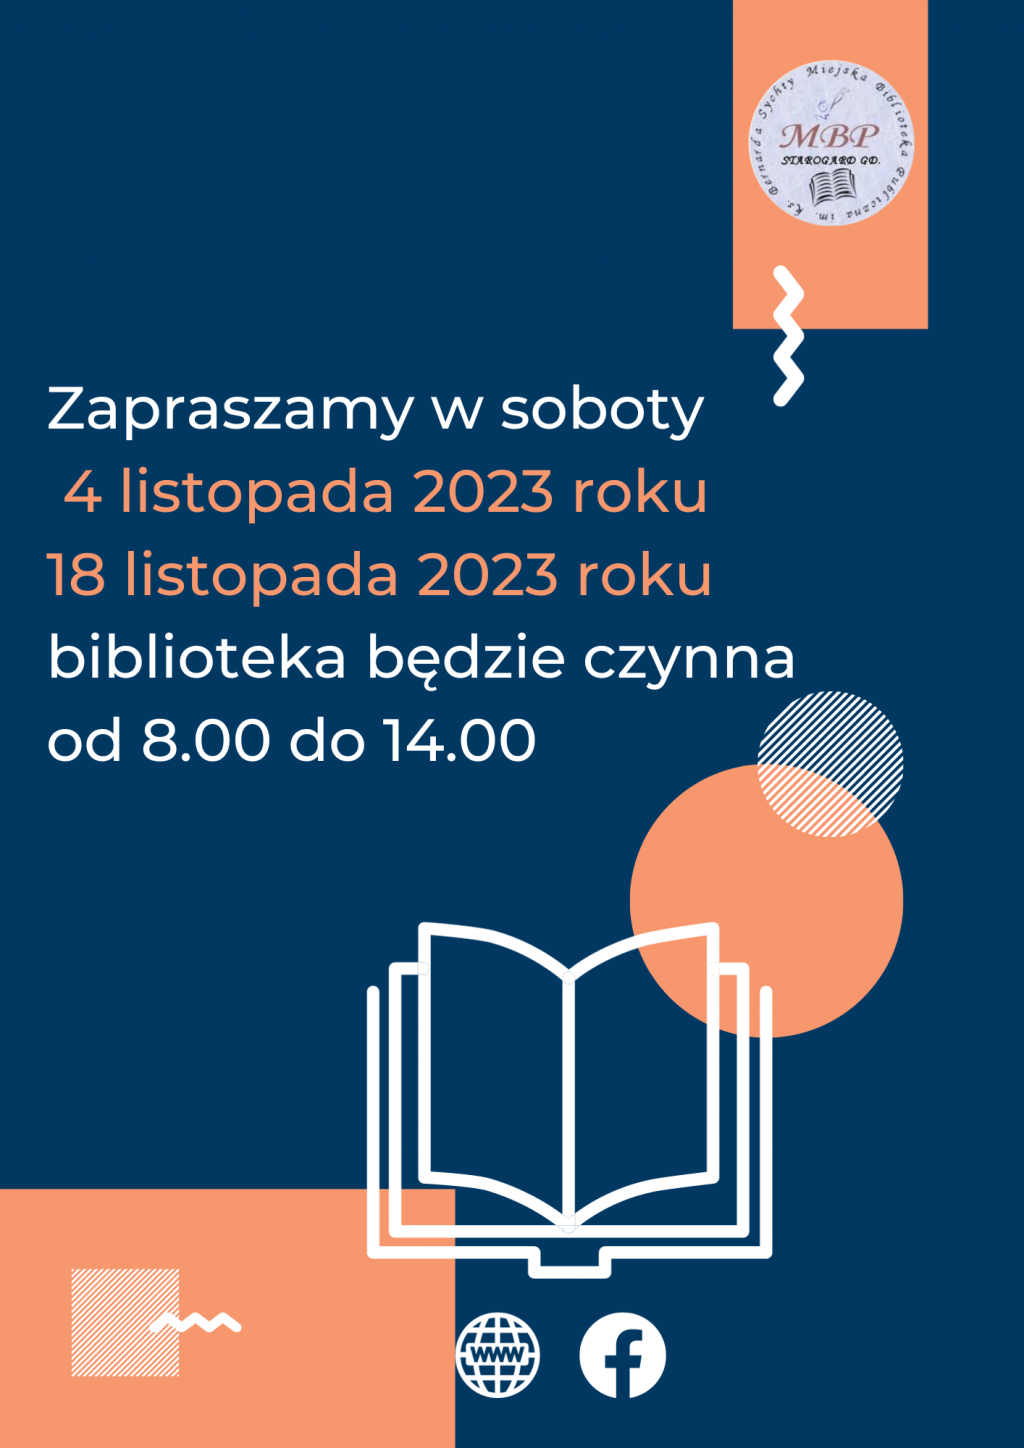 Plakat informujący o pracujących sobotach: 4 listopada 2023 roku i 18 listopada 2023 roku, biblioteka będzie czynna od 8.00 do 14.00. Miejska Biblioteka Publiczna w Starogardzie Gdańskim.